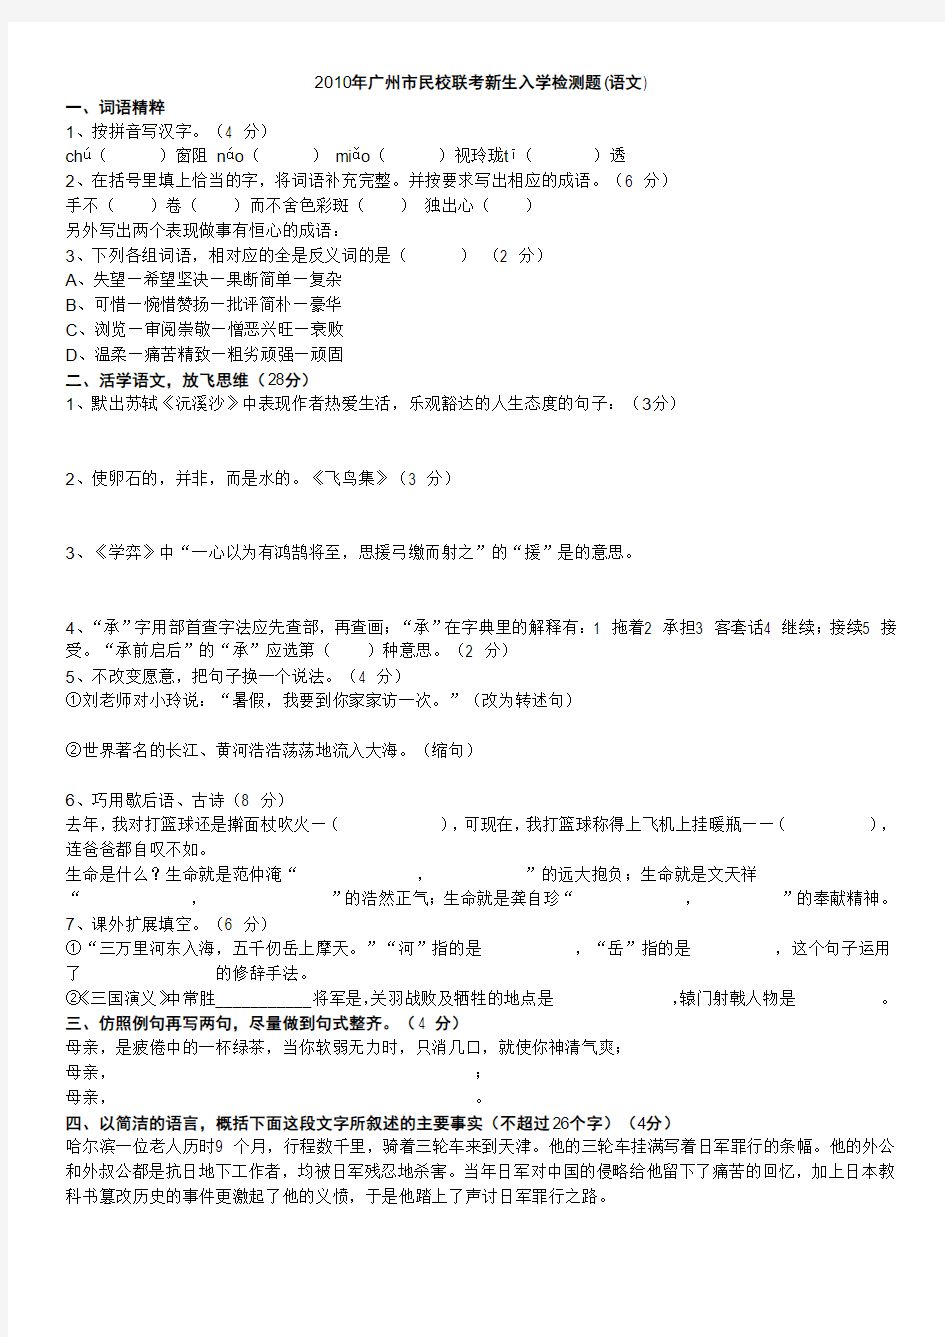 2006-2010年广州市民校联考题语文